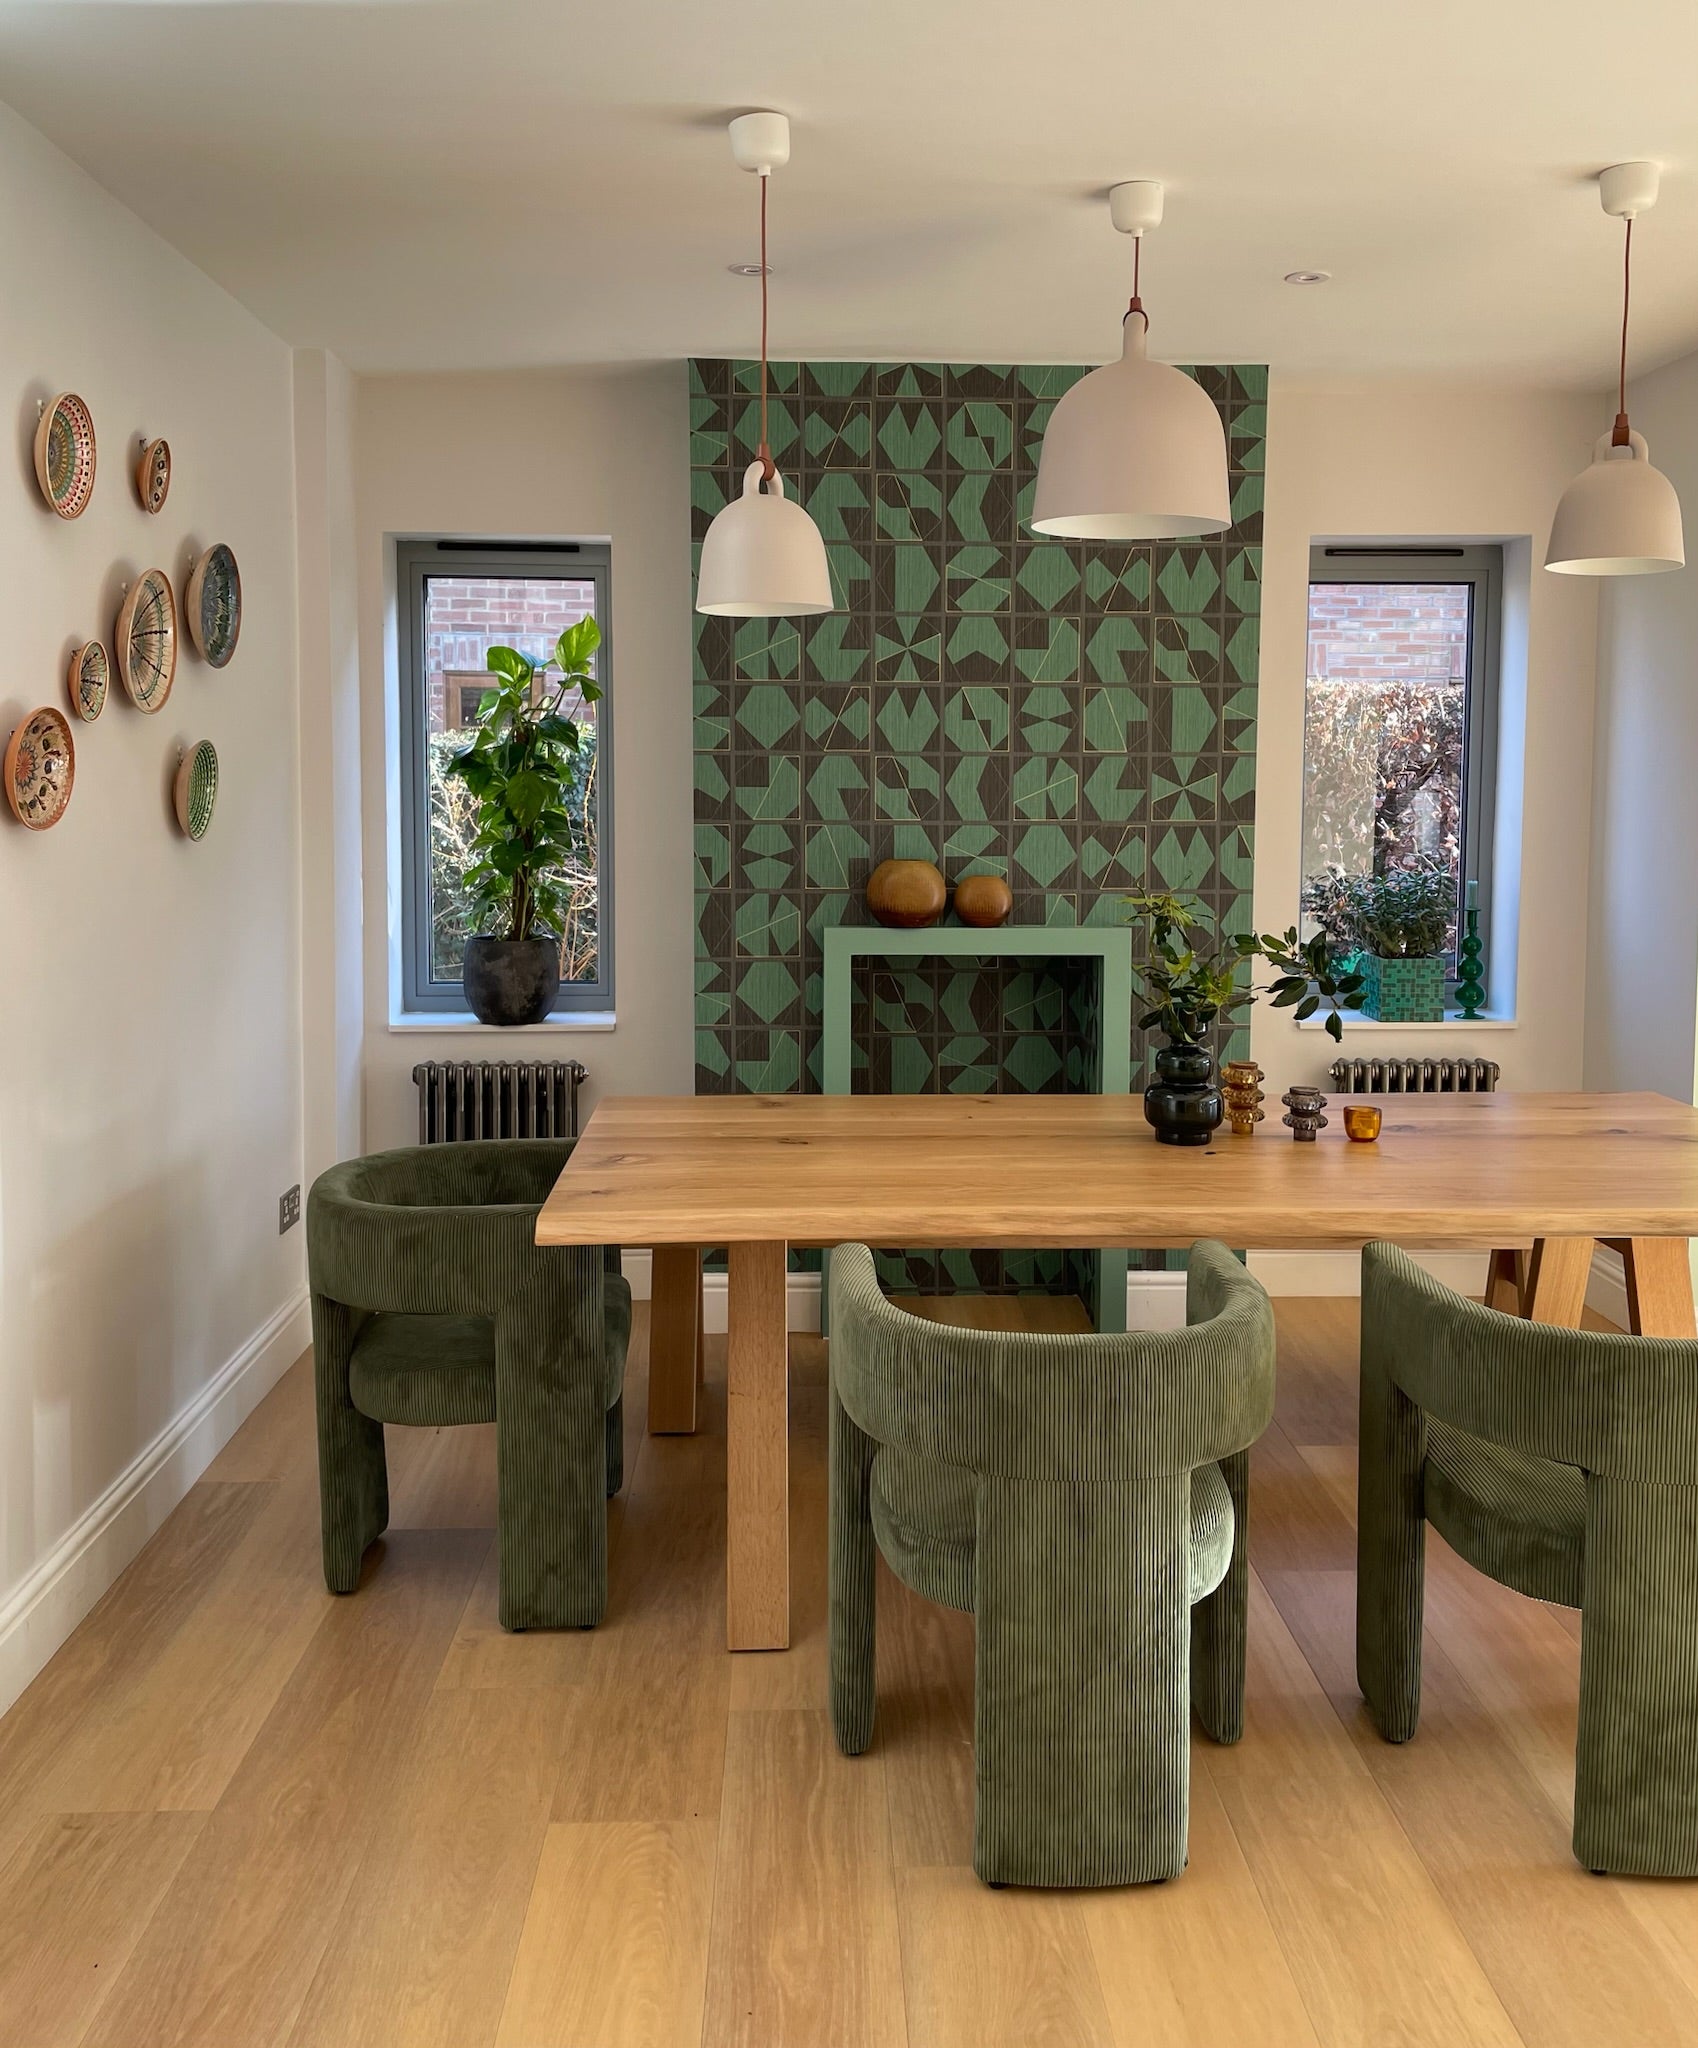 Interior design, dining velvet upholstered chairs